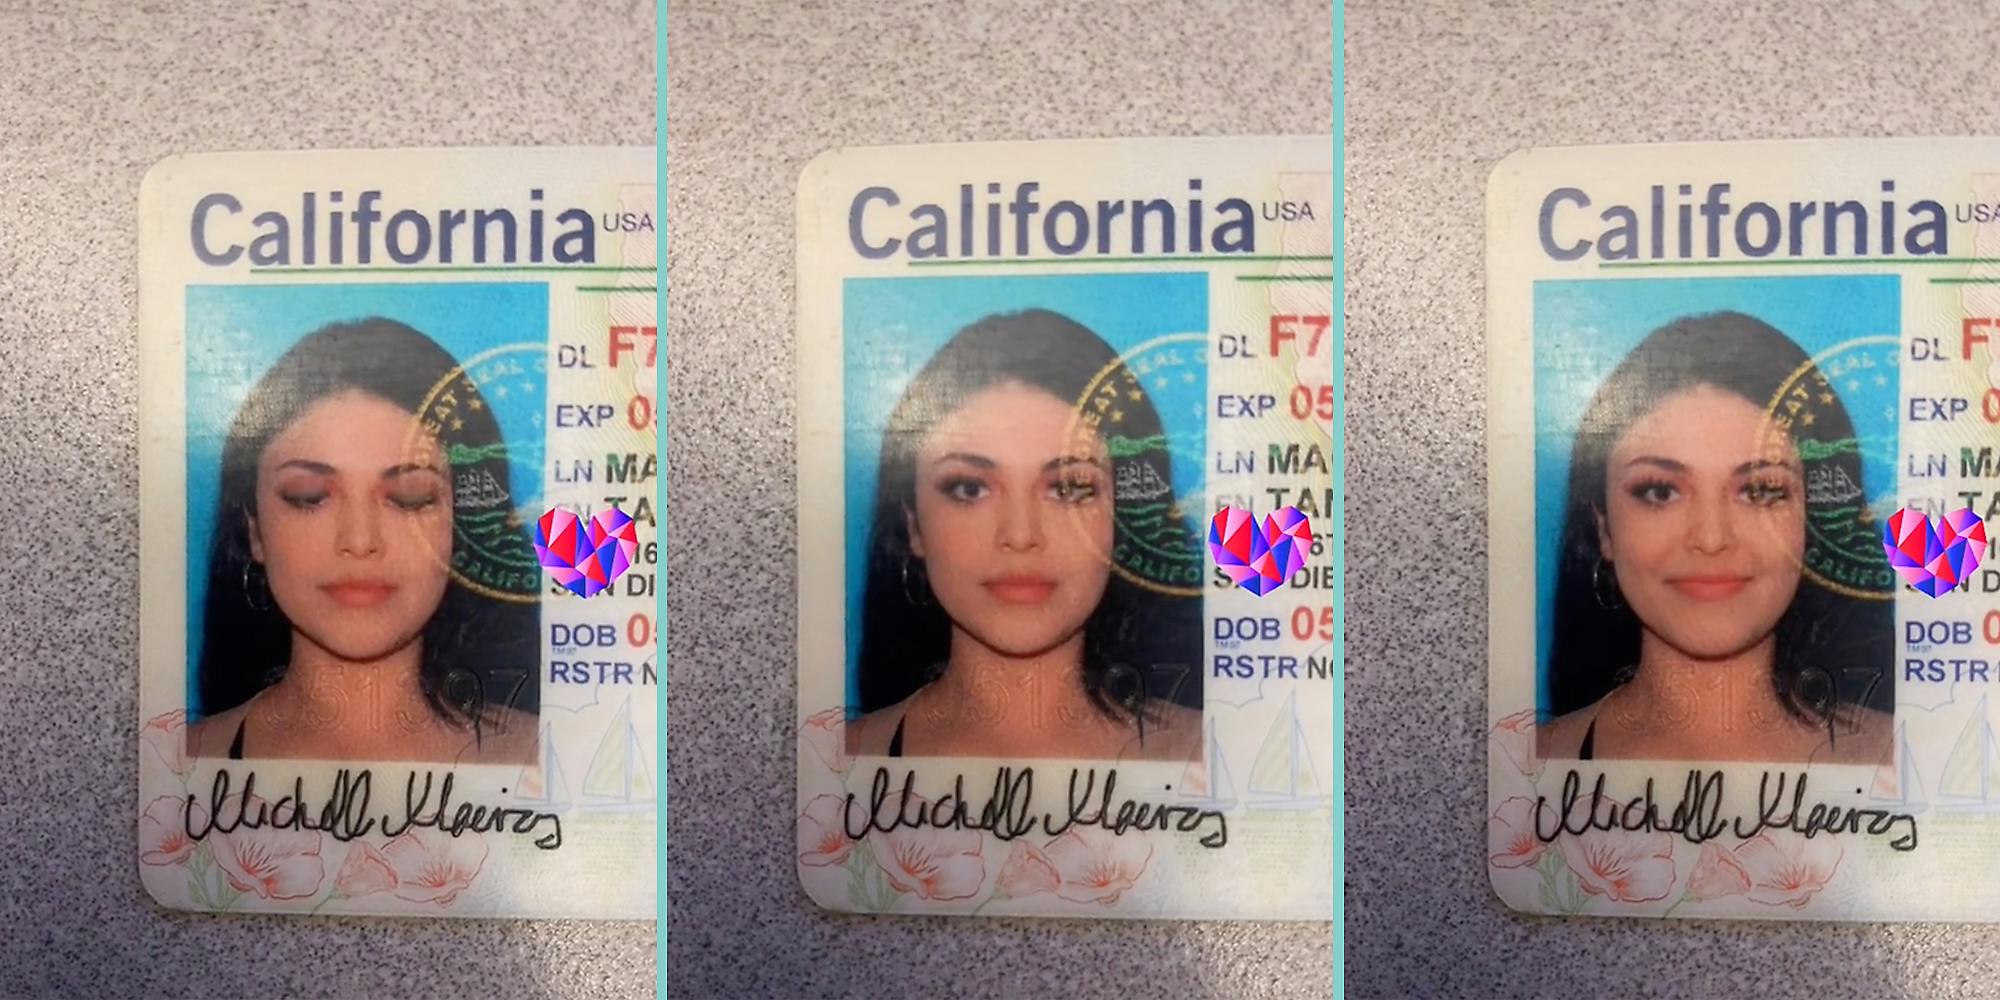 A California driver's license.